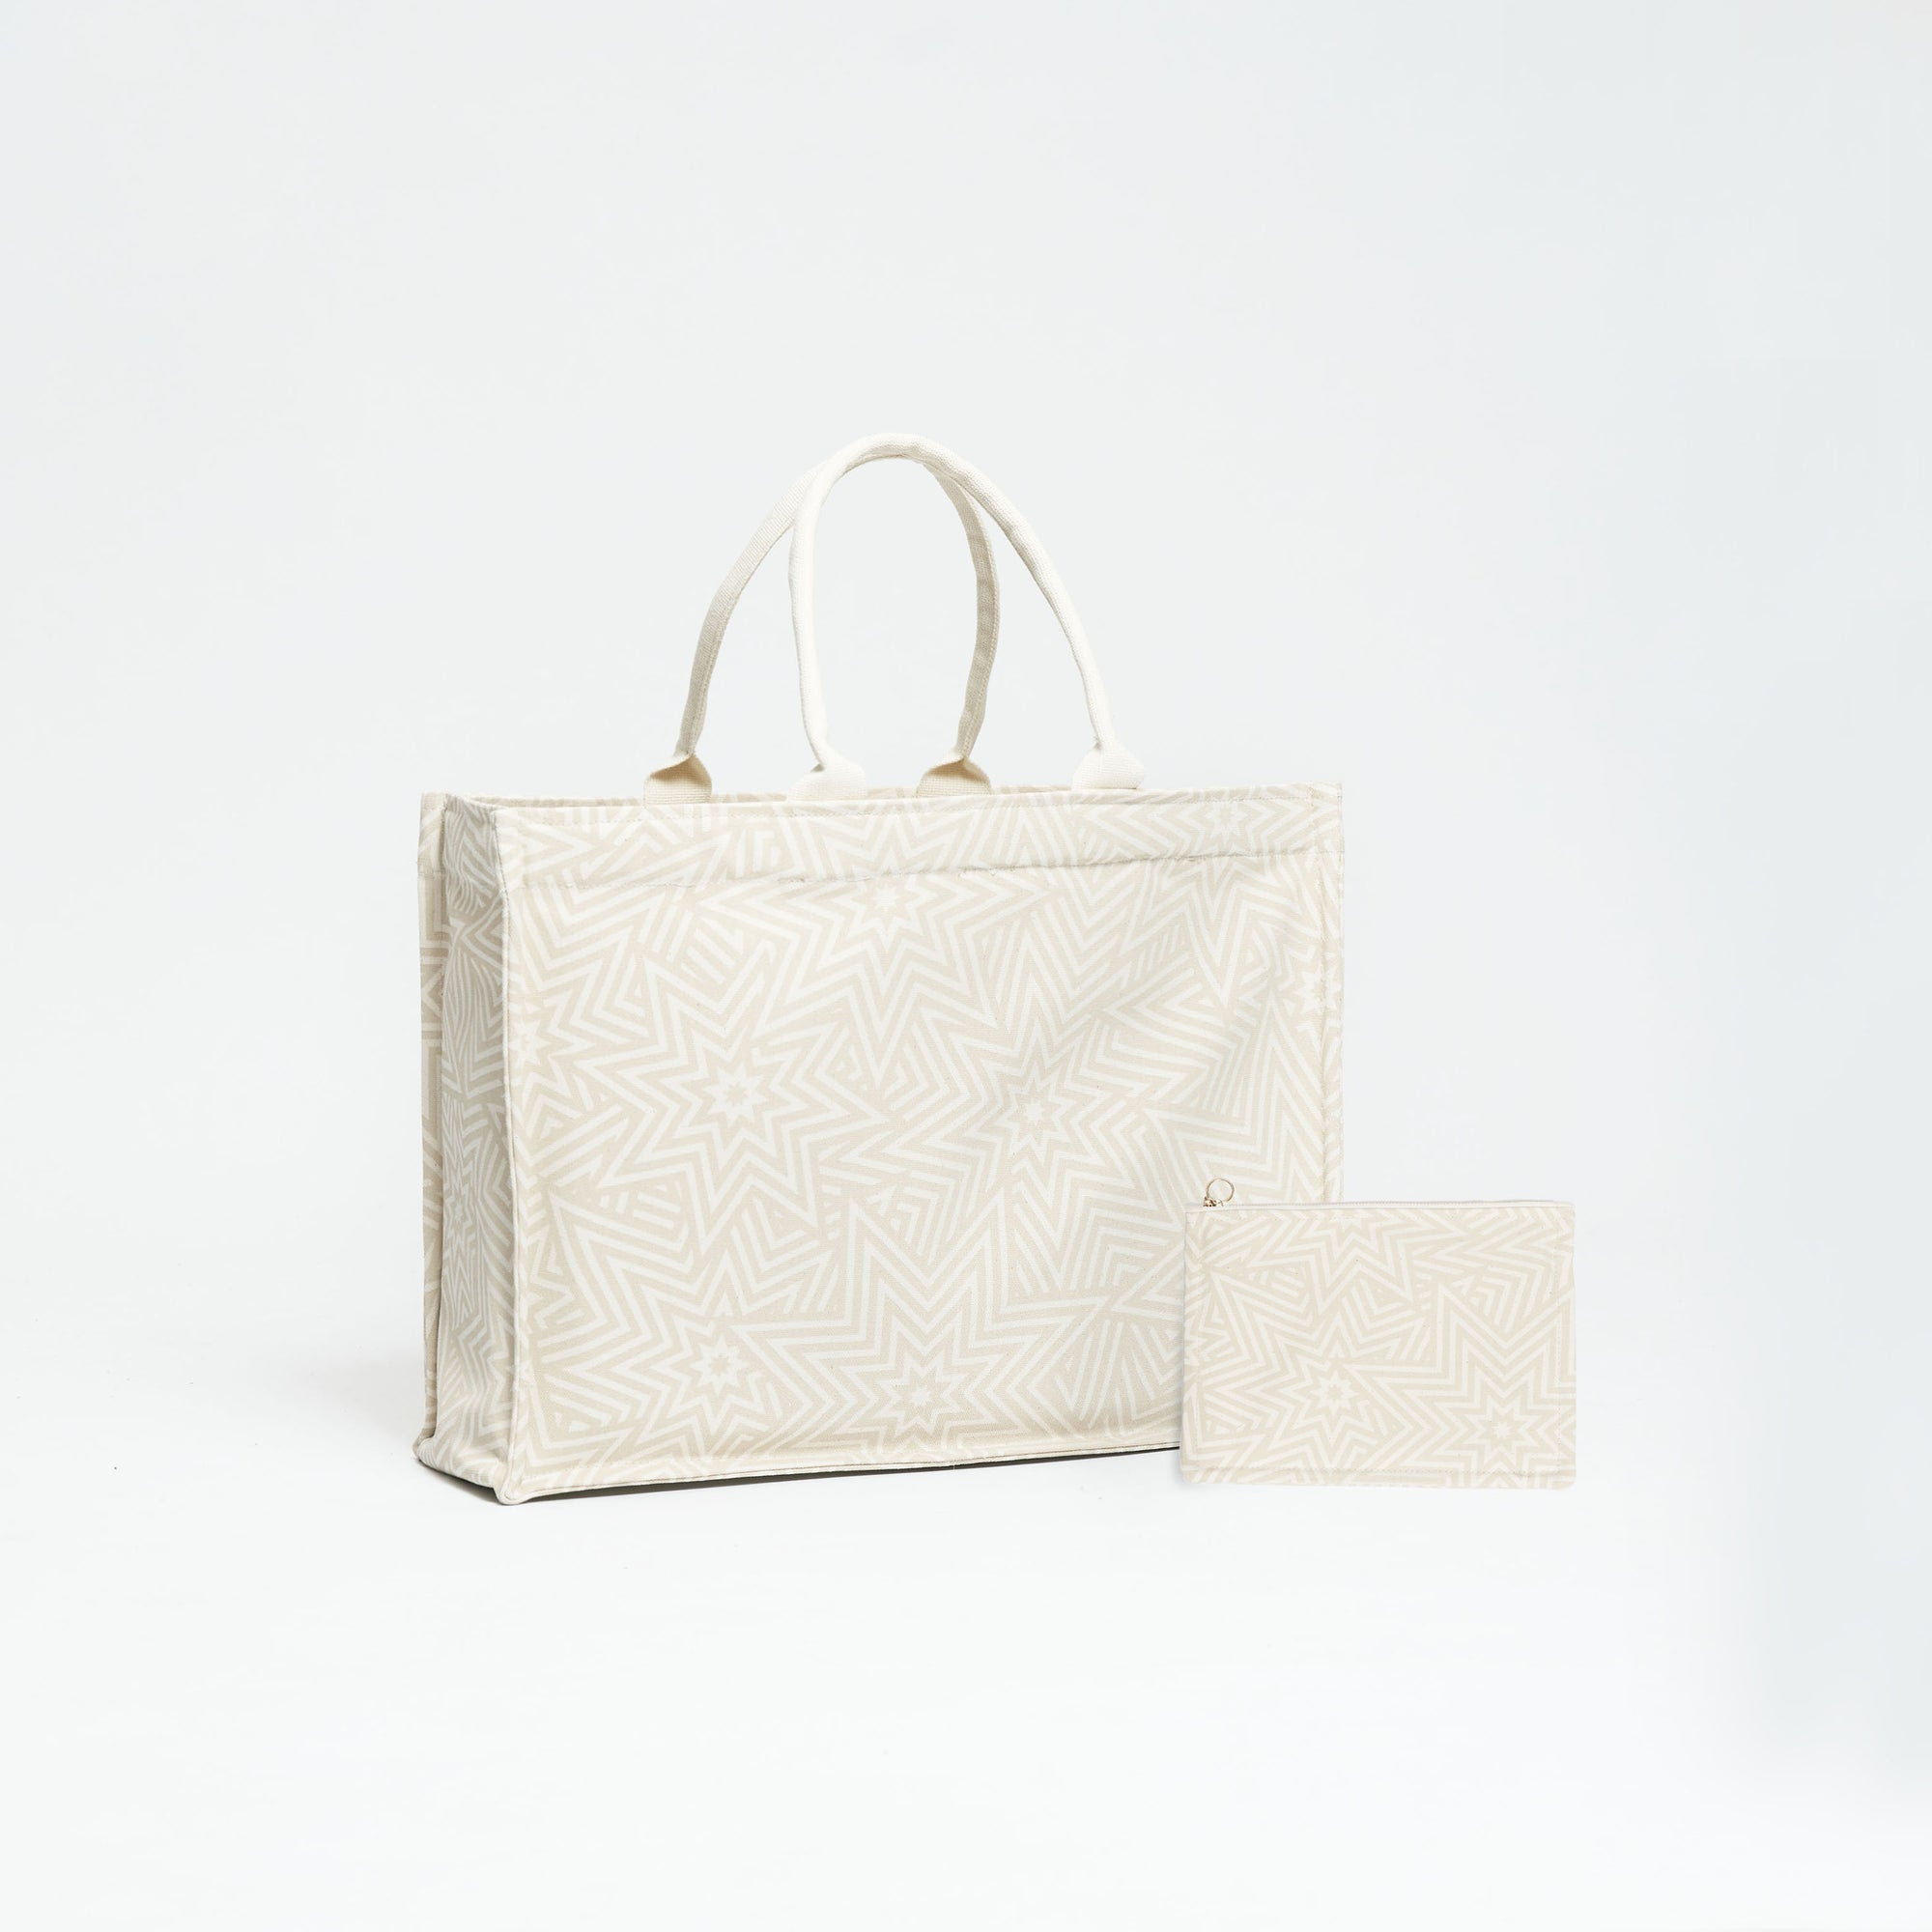 Star Explosion White--skip || Tote Bag XL Set - Utility Bag - Tasche - vegan - Shopper